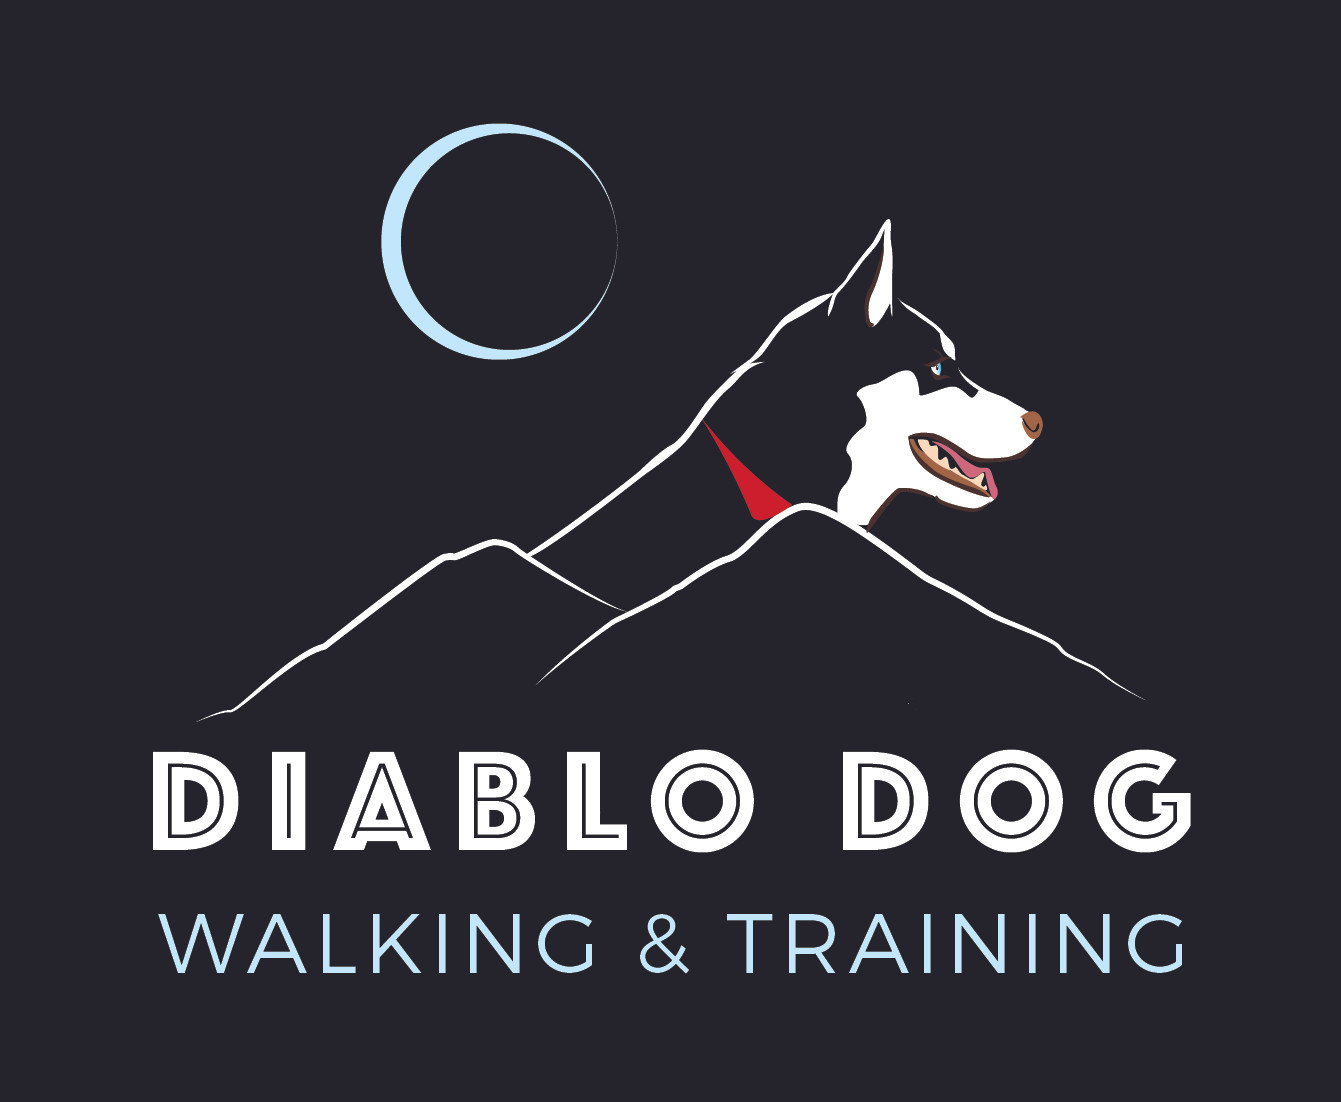 Dog Walking and Pet Services | Diablo Dog Walking